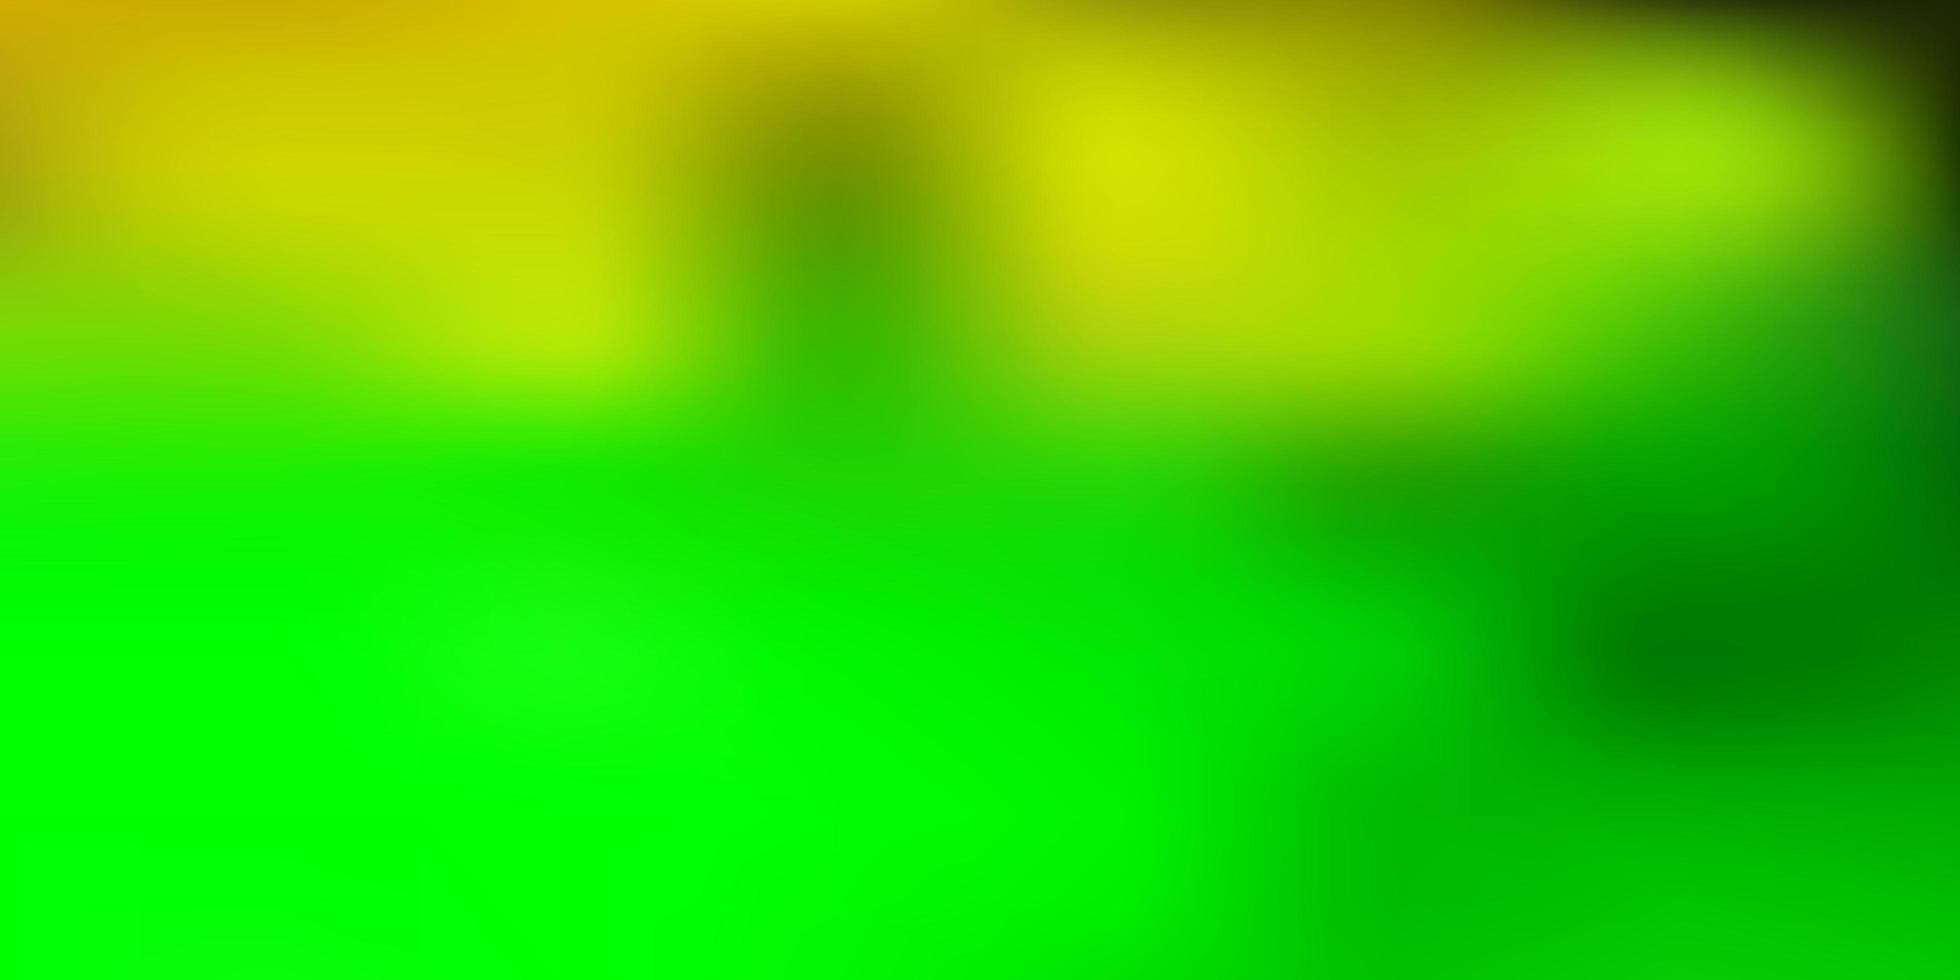 ljusgrön, gul vektor abstrakt oskärpa mönster.